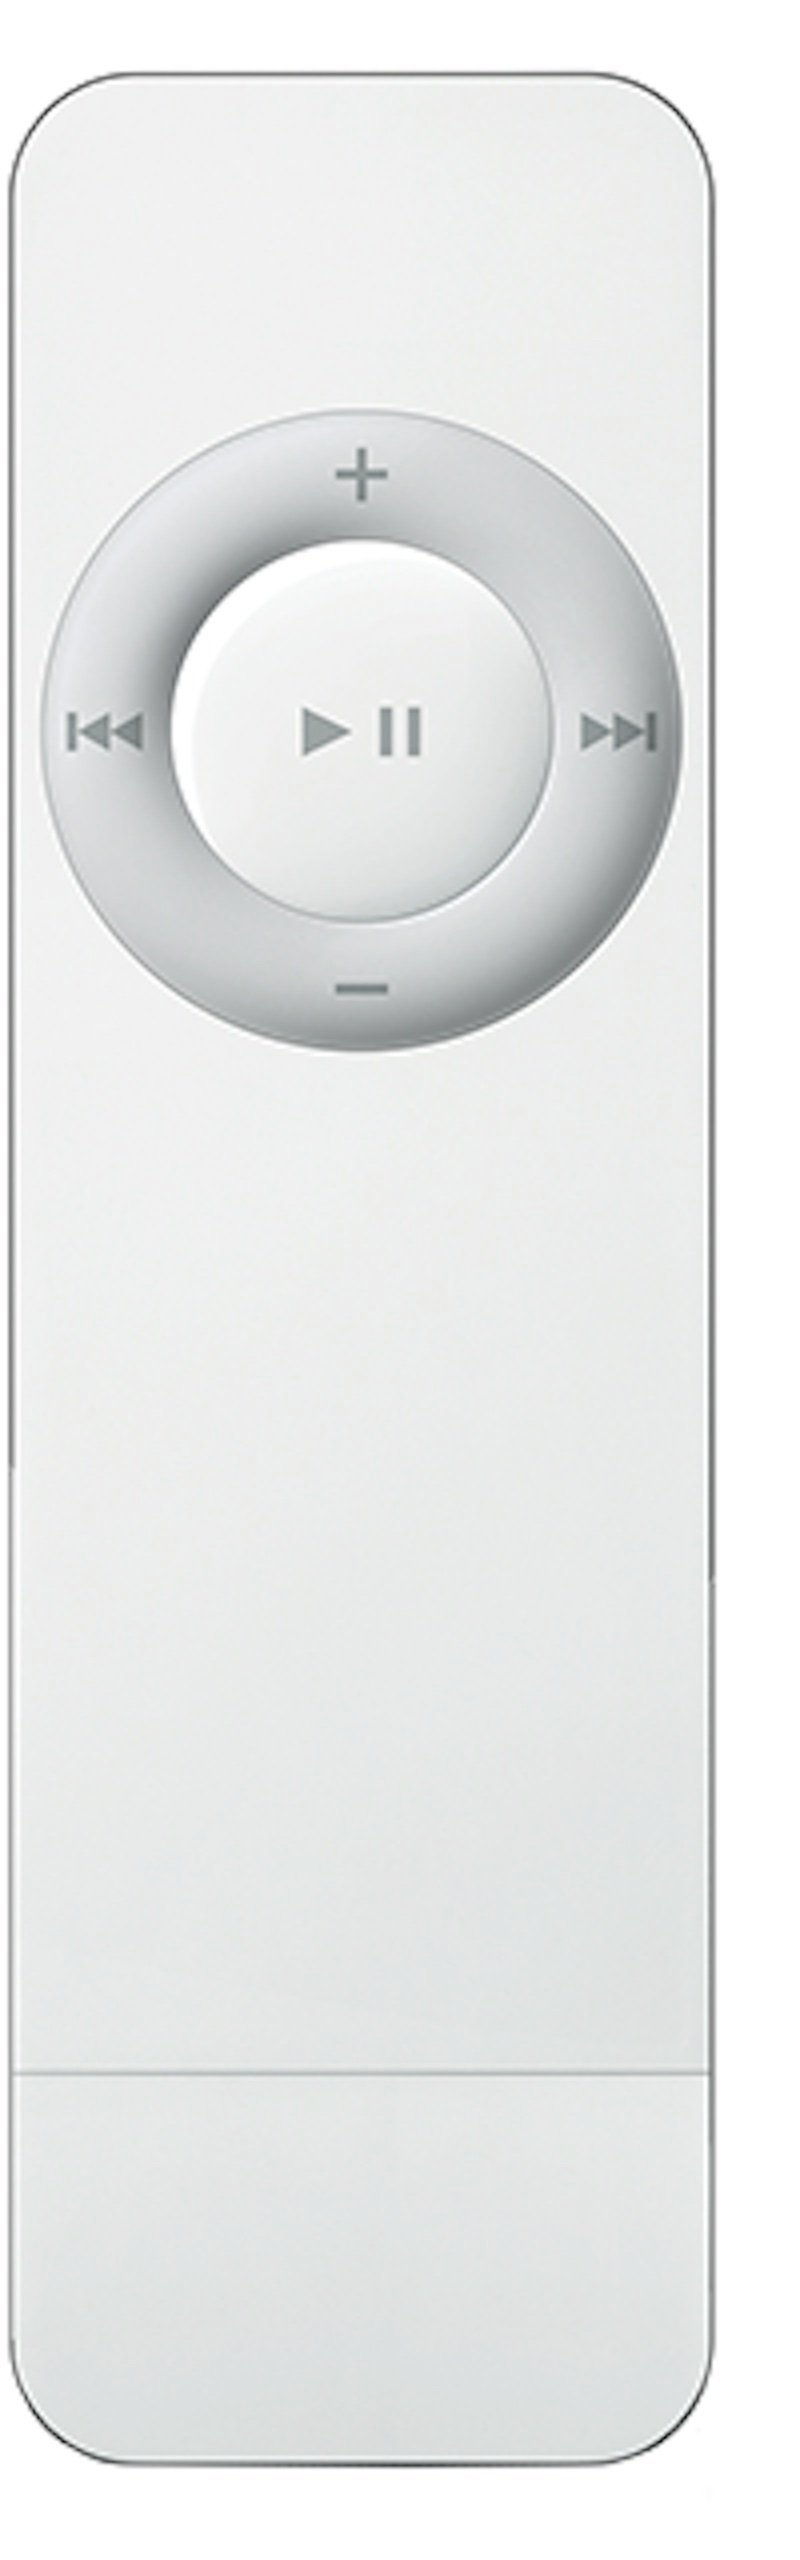 iPod Shuffle 1 512Mb